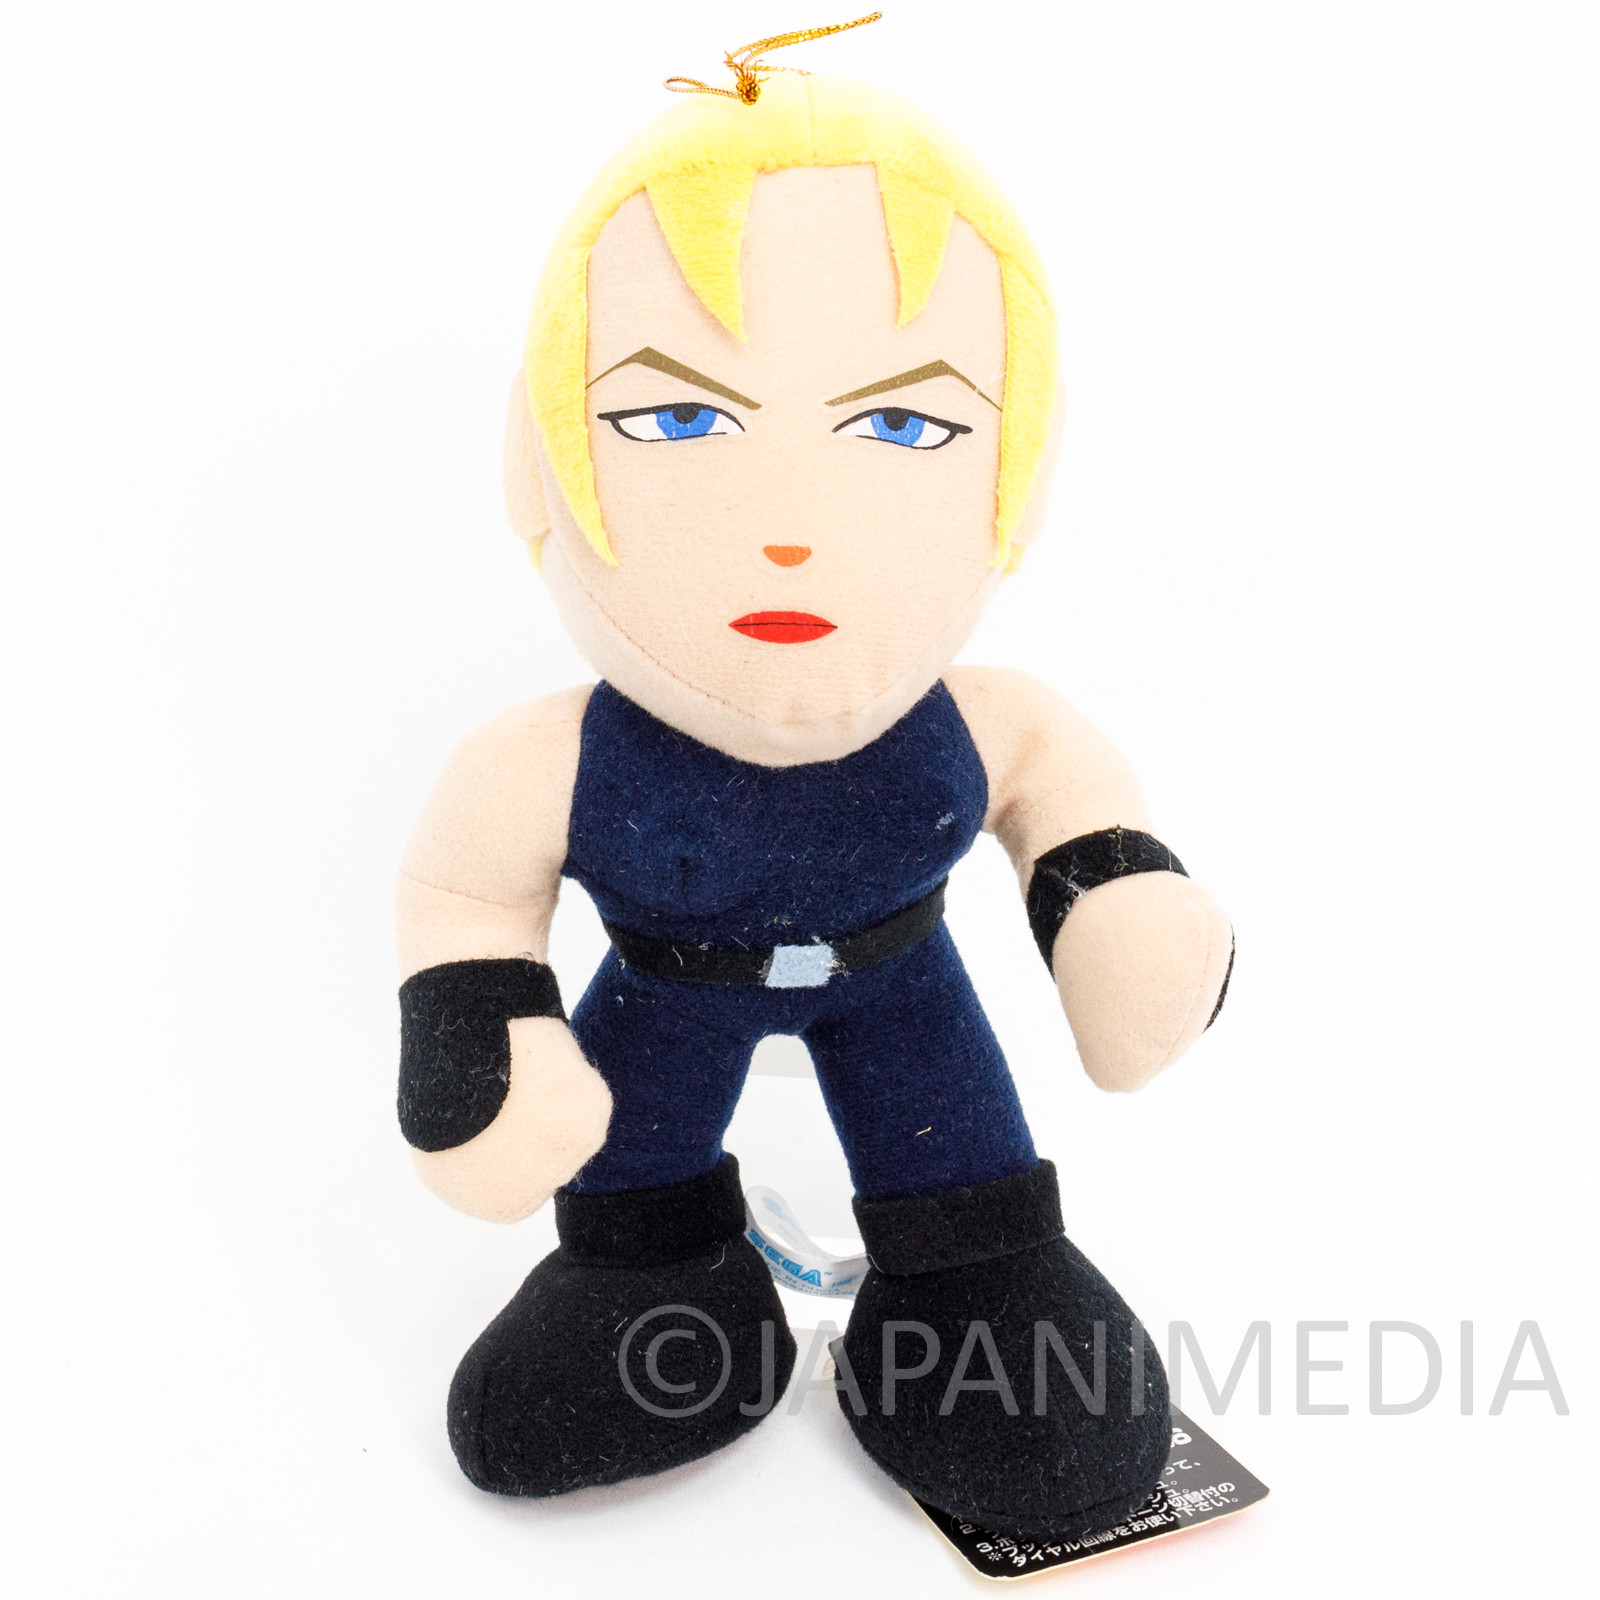 Virtua Fighter Sarah Bryant Plush Doll 8" SEGA 1994 JAPAN